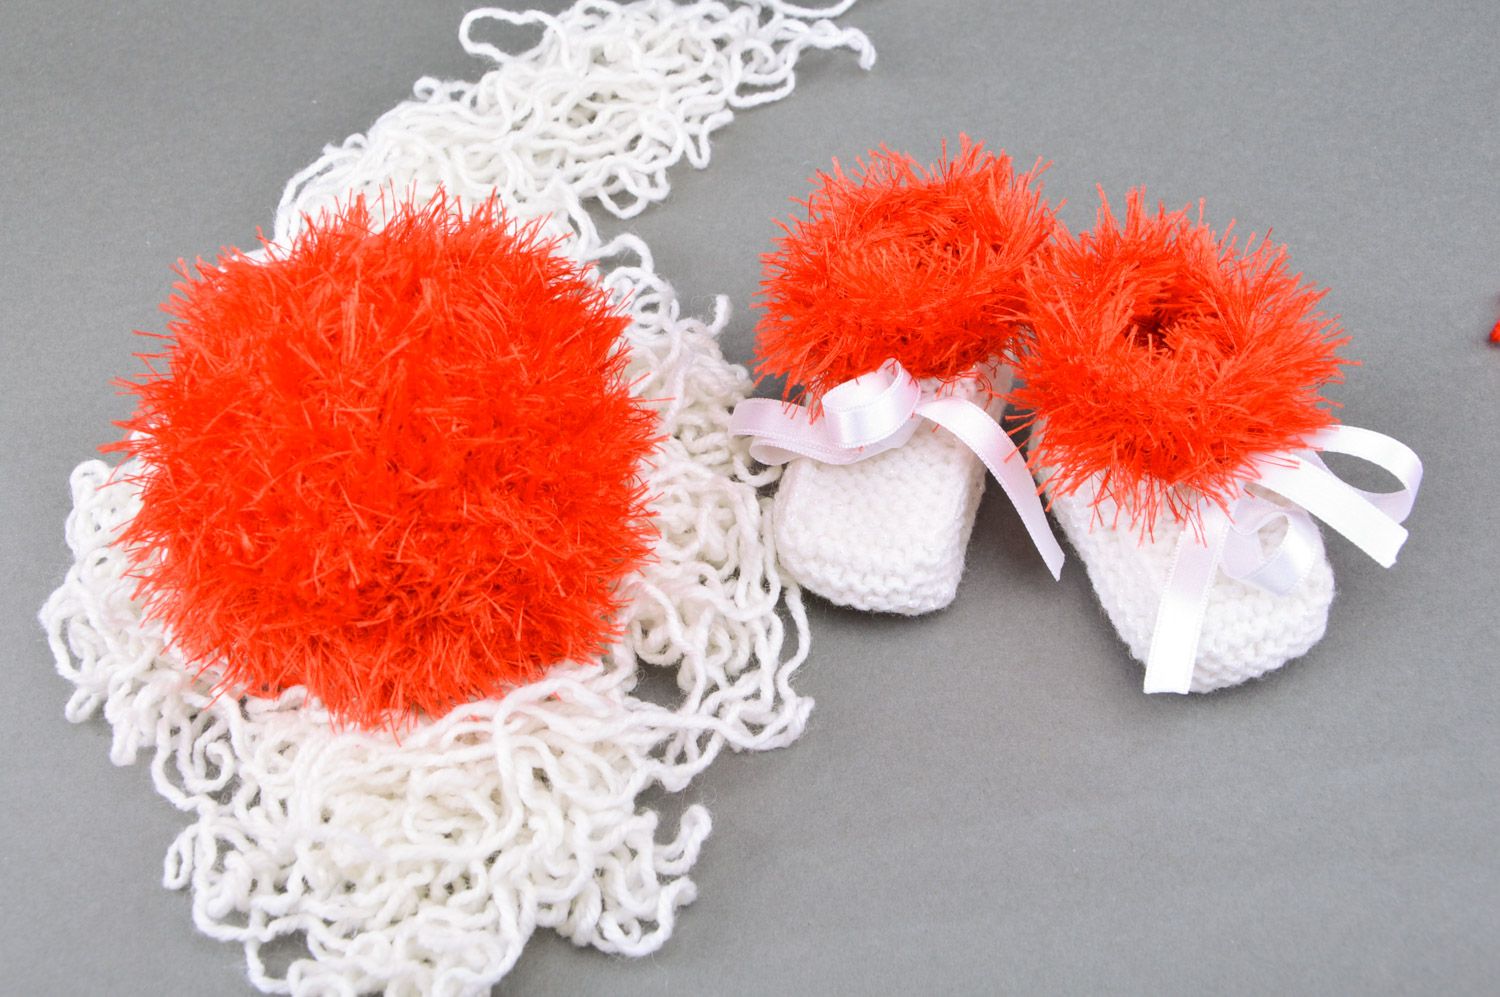 Chaussons de bébé tricotés blanc-rouge et balle tricotée rouge faits main photo 1